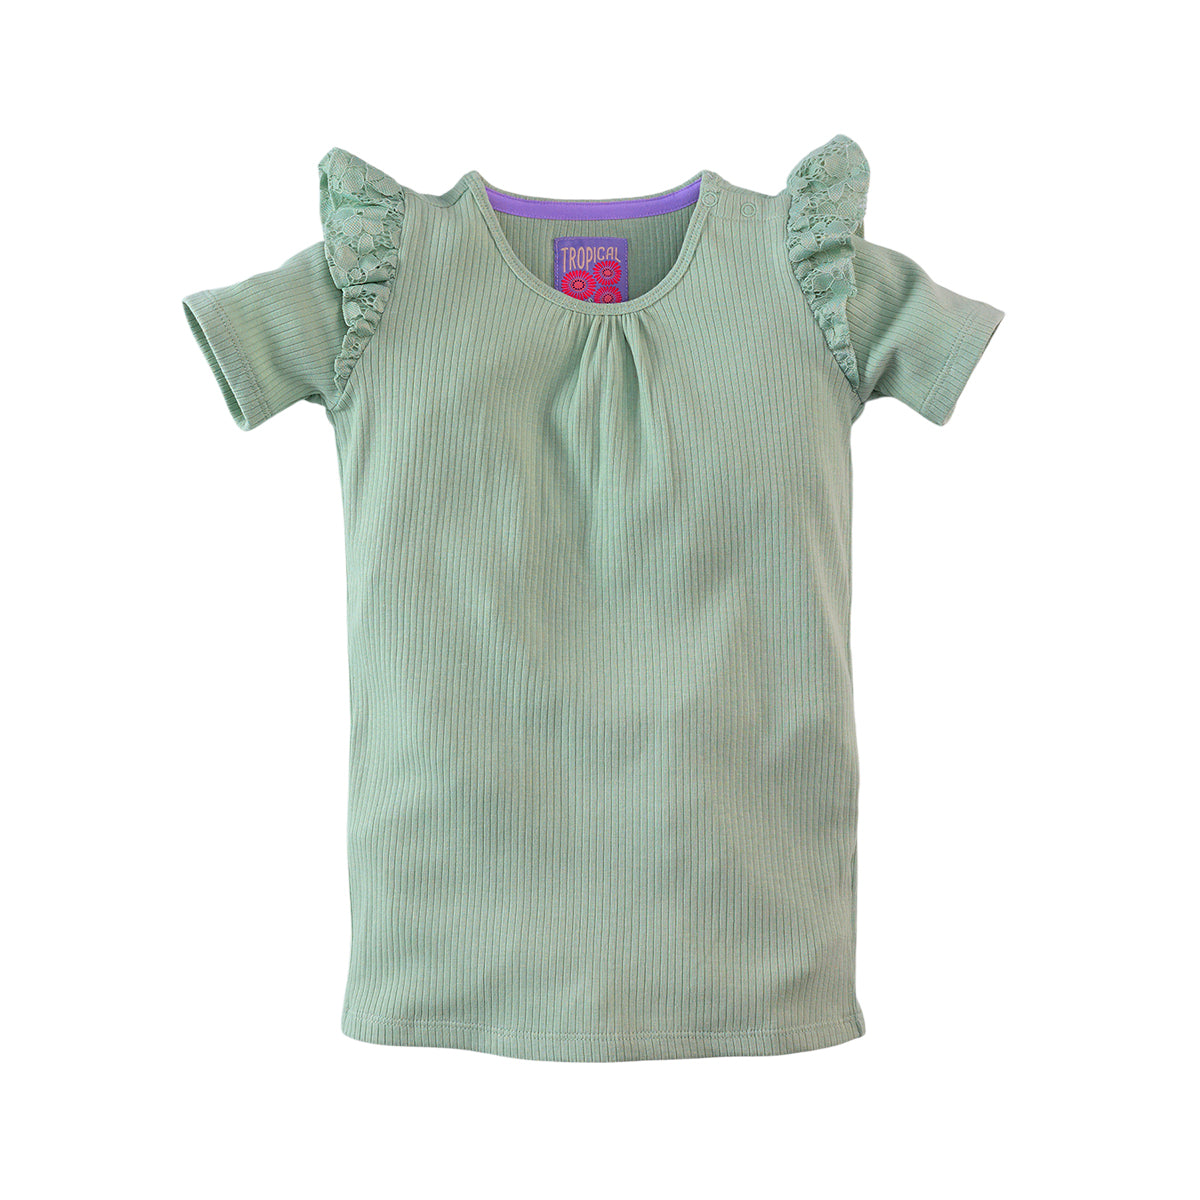 Meisjes Short Sleeve Cherli van Z8 in de kleur Summer salix in maat 140-146.